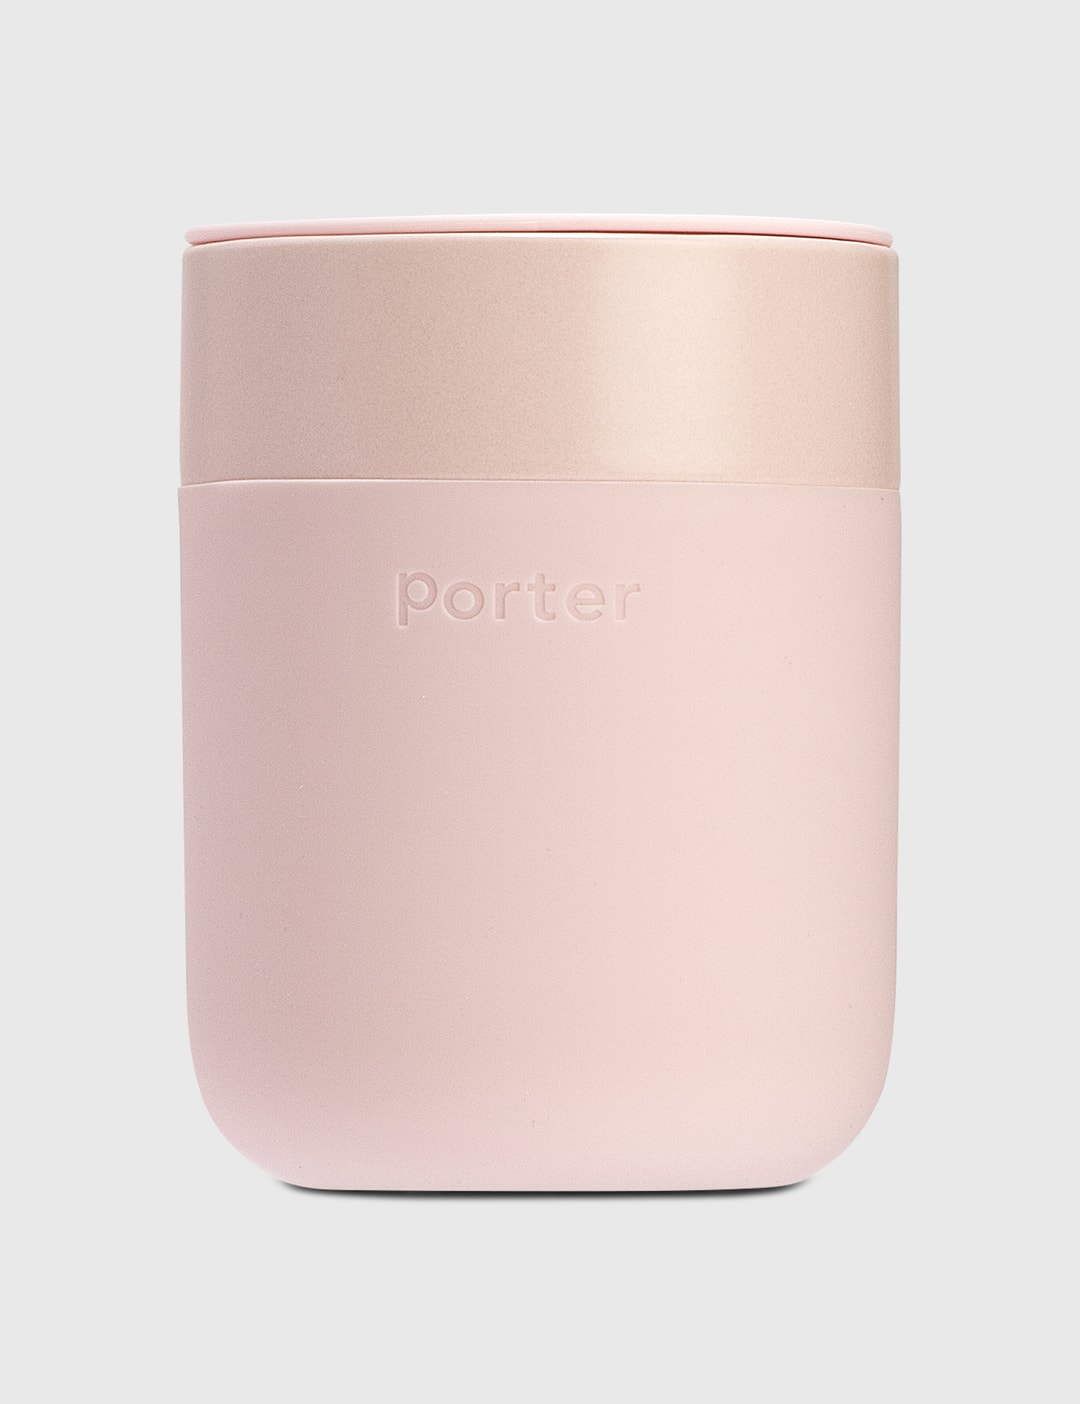 Porter Mug - 16 oz Mug